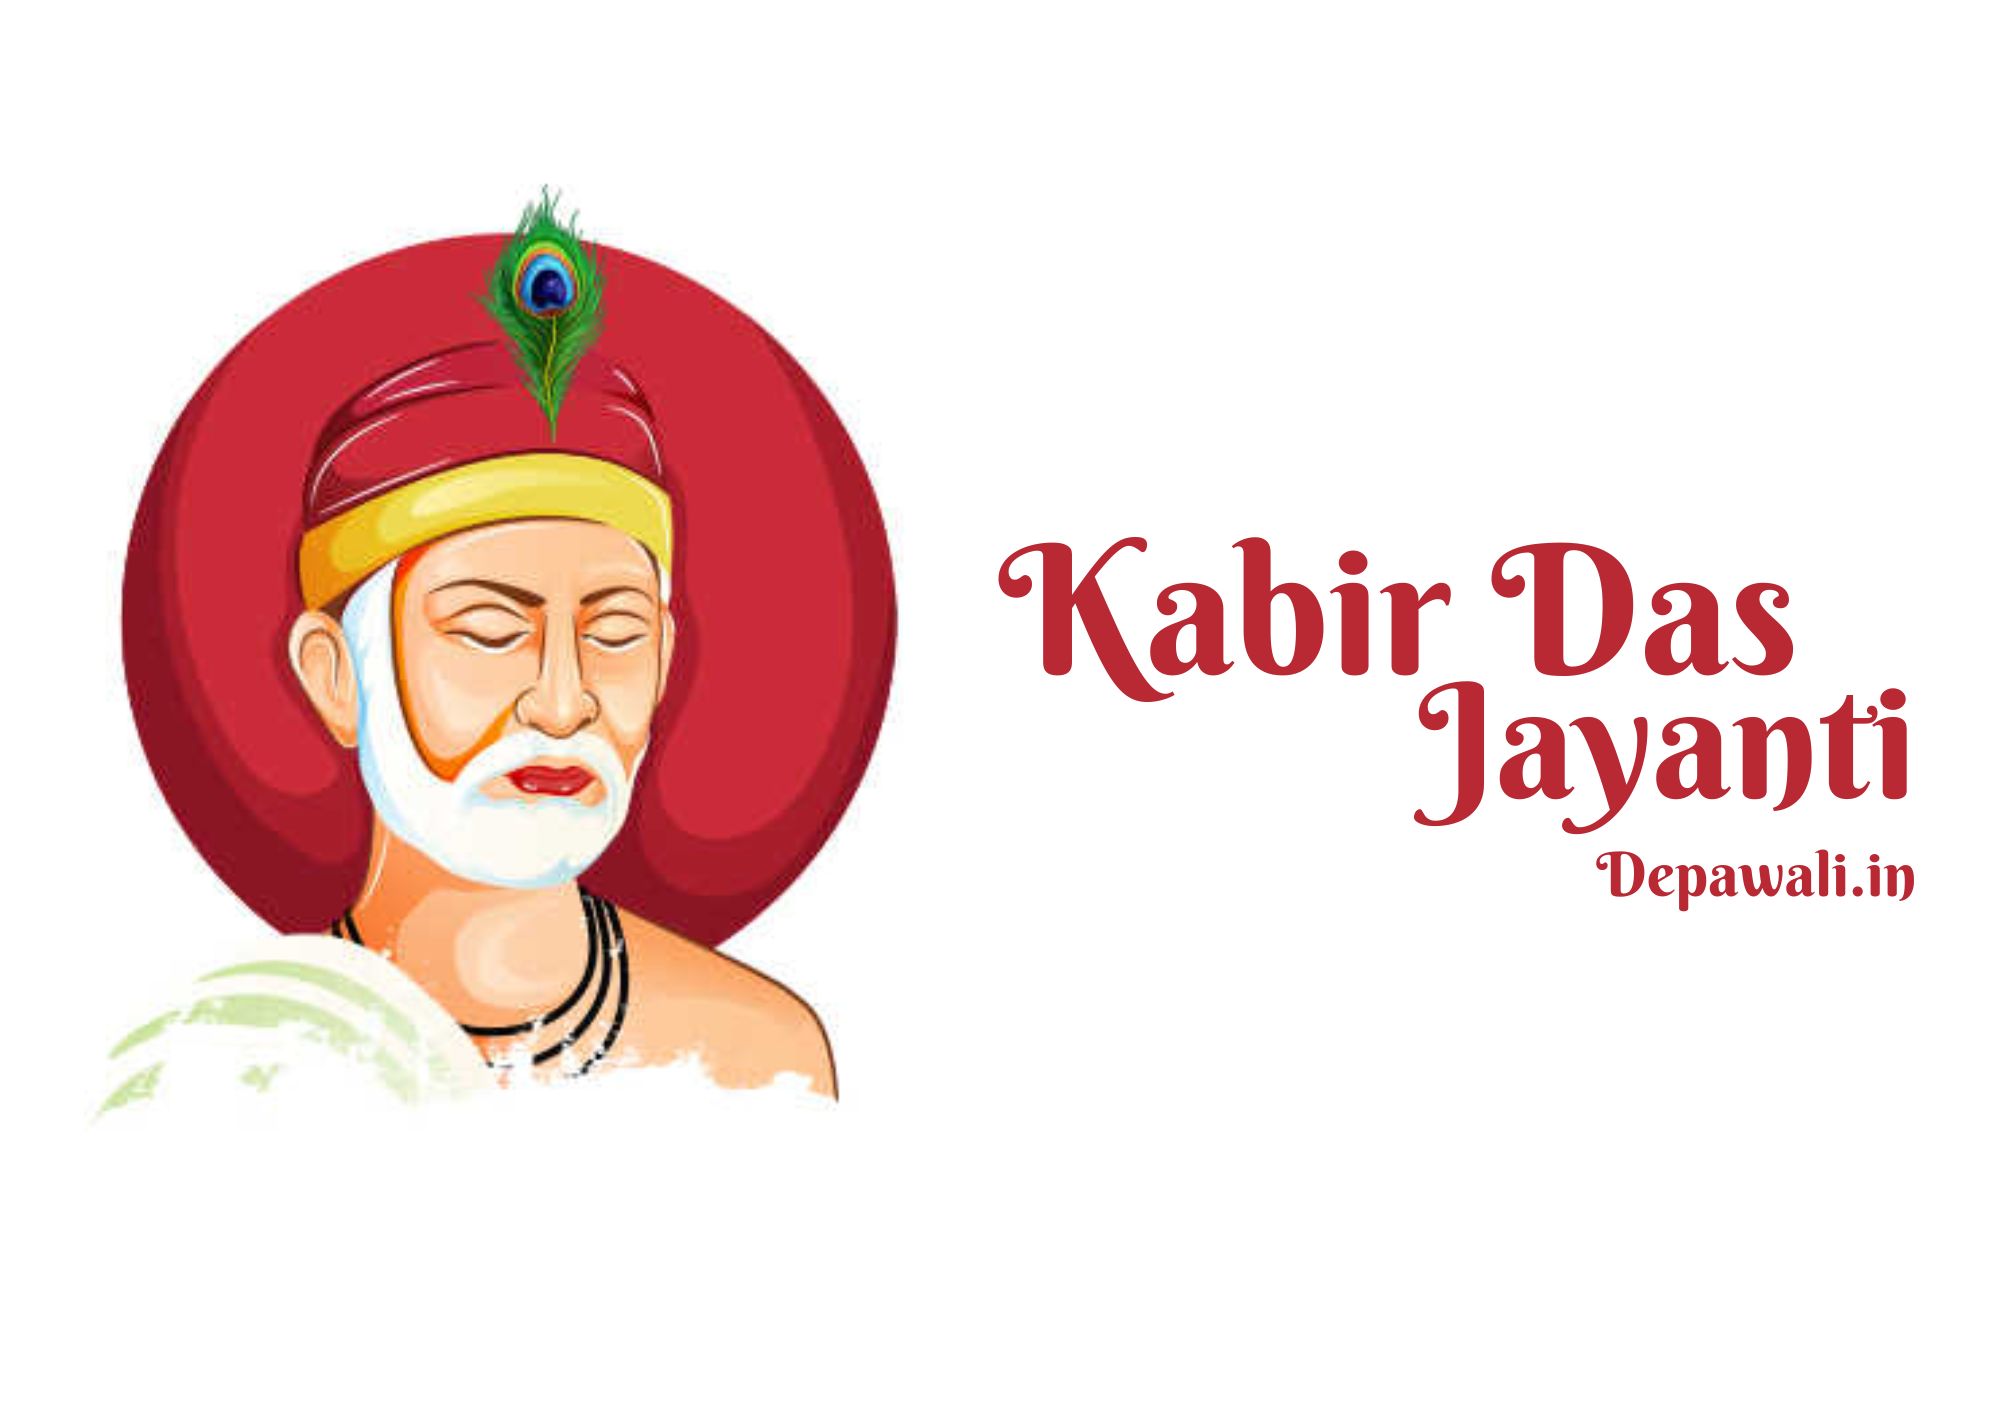 Kabir Das Jayanti 2023: कब है कबीर दास जयंती, जानिए उनके जीवन से जुड़ी तिथि व तथ्य - Sant Kabir Jayanti Kab Hai 2023